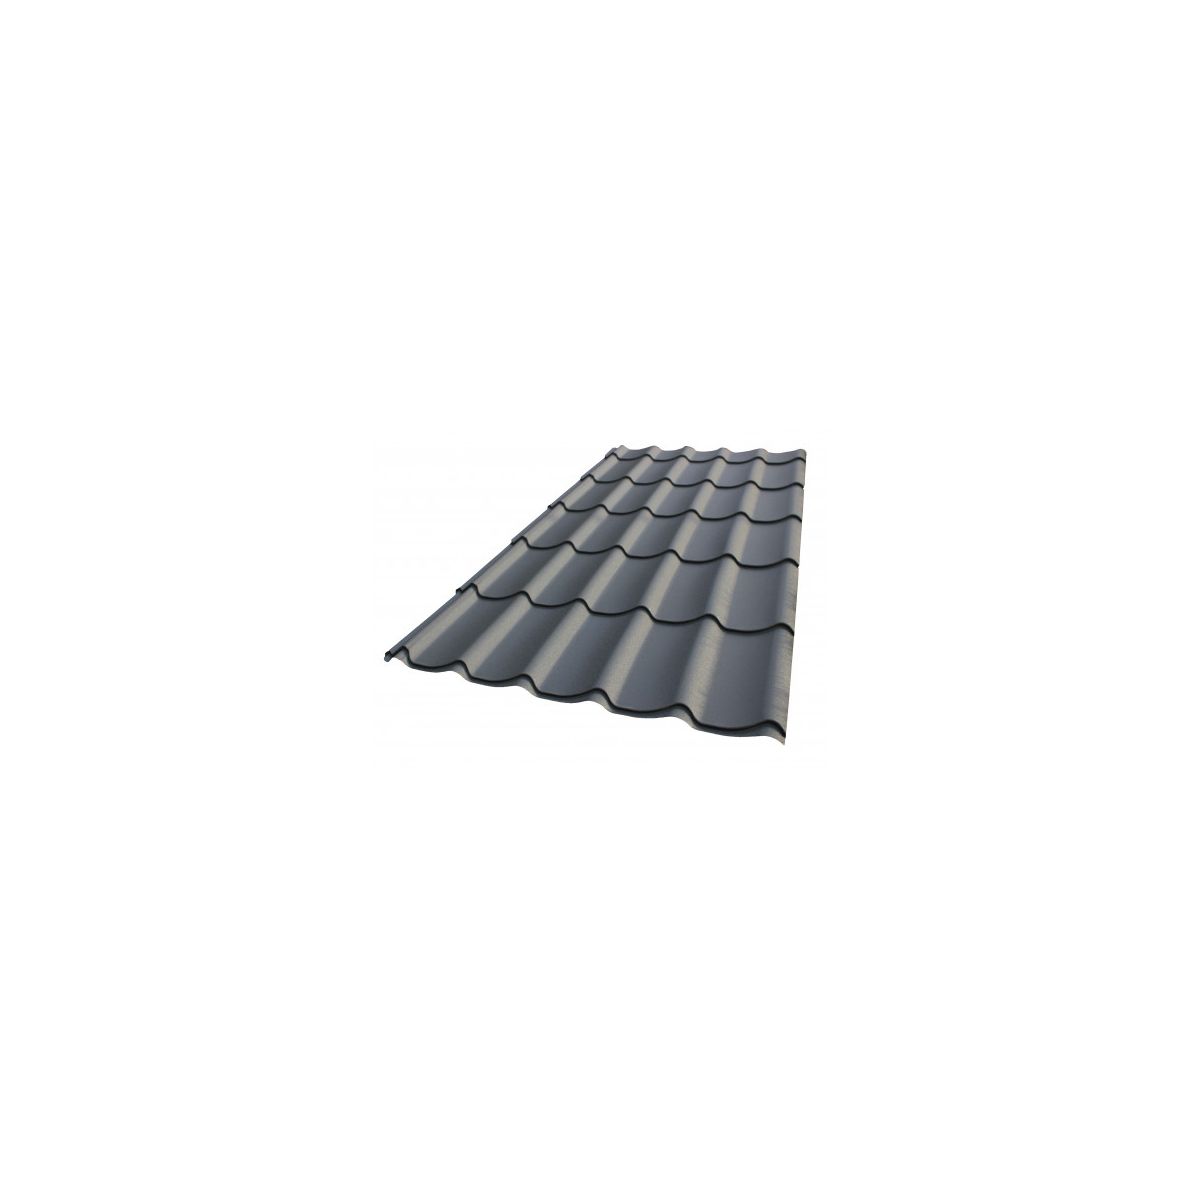 Tôle imitation tuile - Anti condensation - Ral 7016 (gris) - Longueur 3m